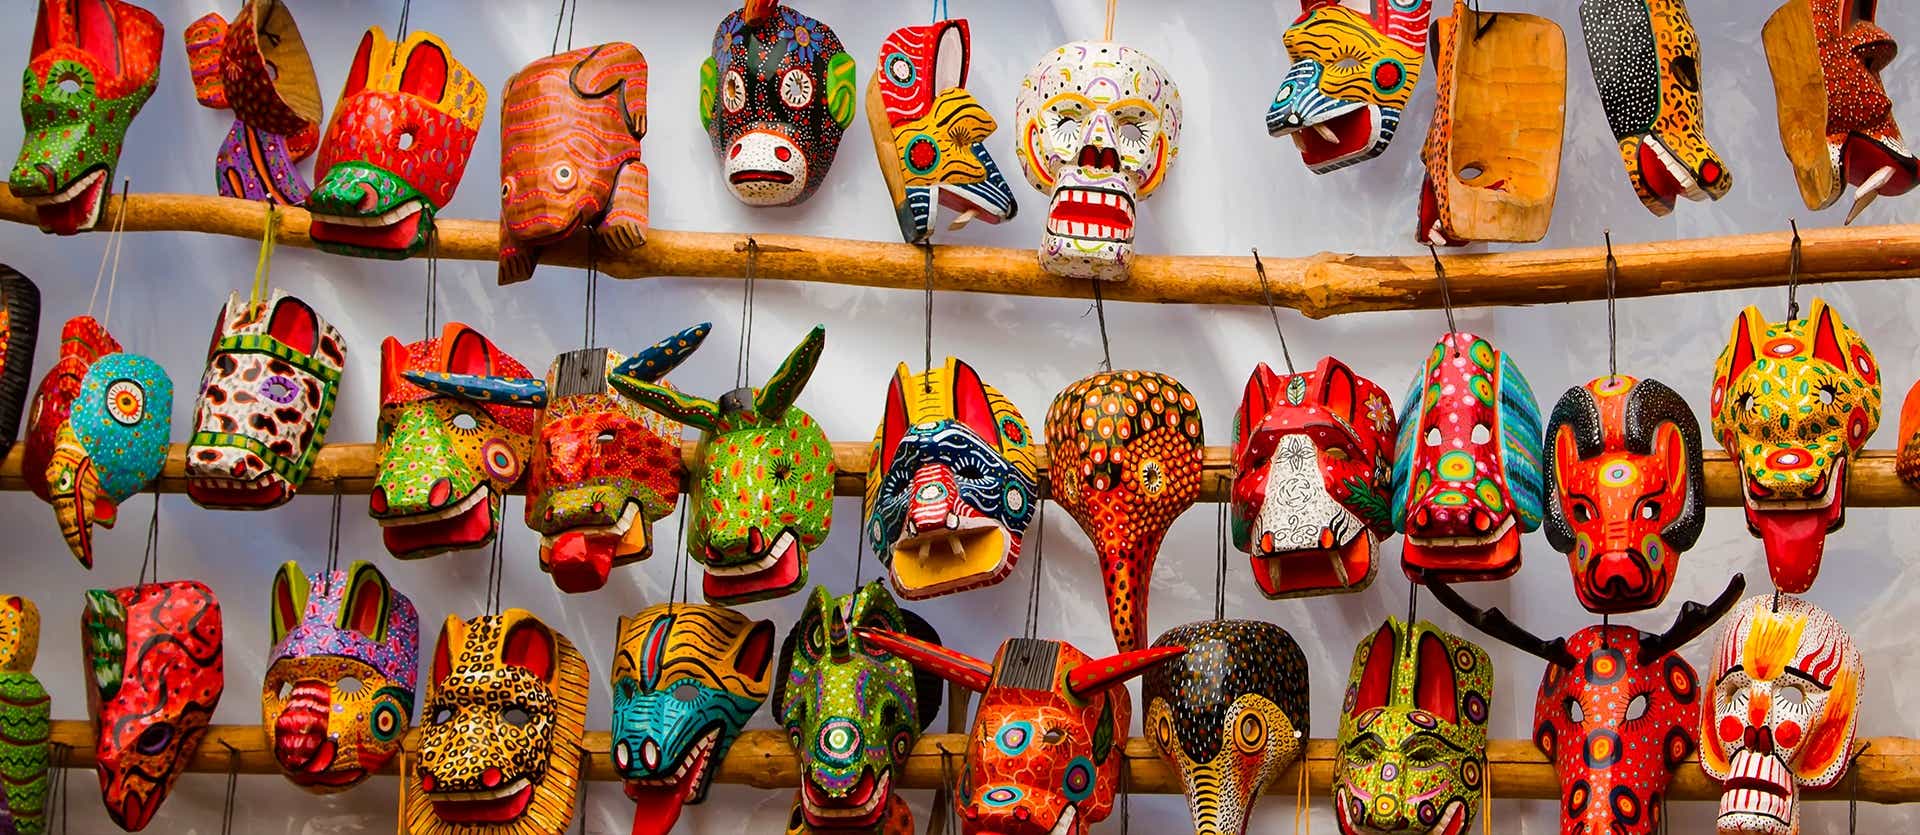 Máscaras tradicionales <span class="iconos separador"></span> Chichicastenango <span class="iconos separador"></span> Guatemala